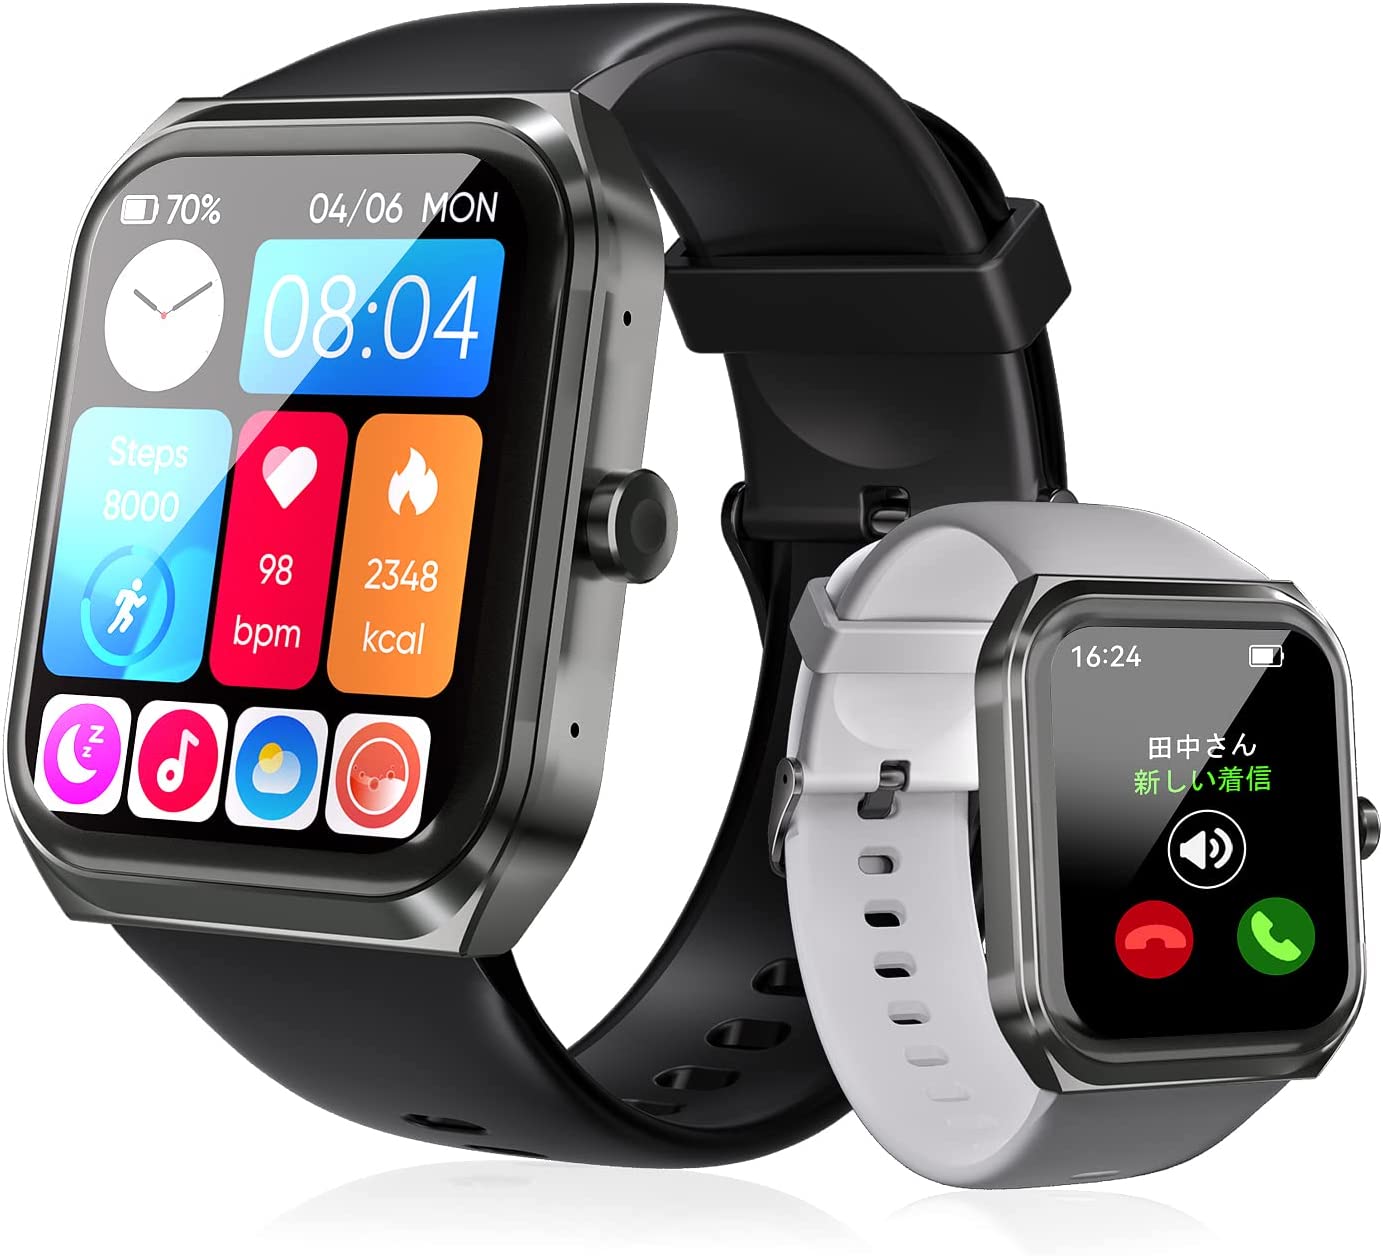 スマートウォッチ Bluetooth5.0 腕時計 多機能 smart watch スマートウォッチ IP68防水 長持ちバッテリー フィット ミニゲーム 100種類運動モード DIY文字盤 音声アシスタント スマートブレスレット 遠隔カメラ